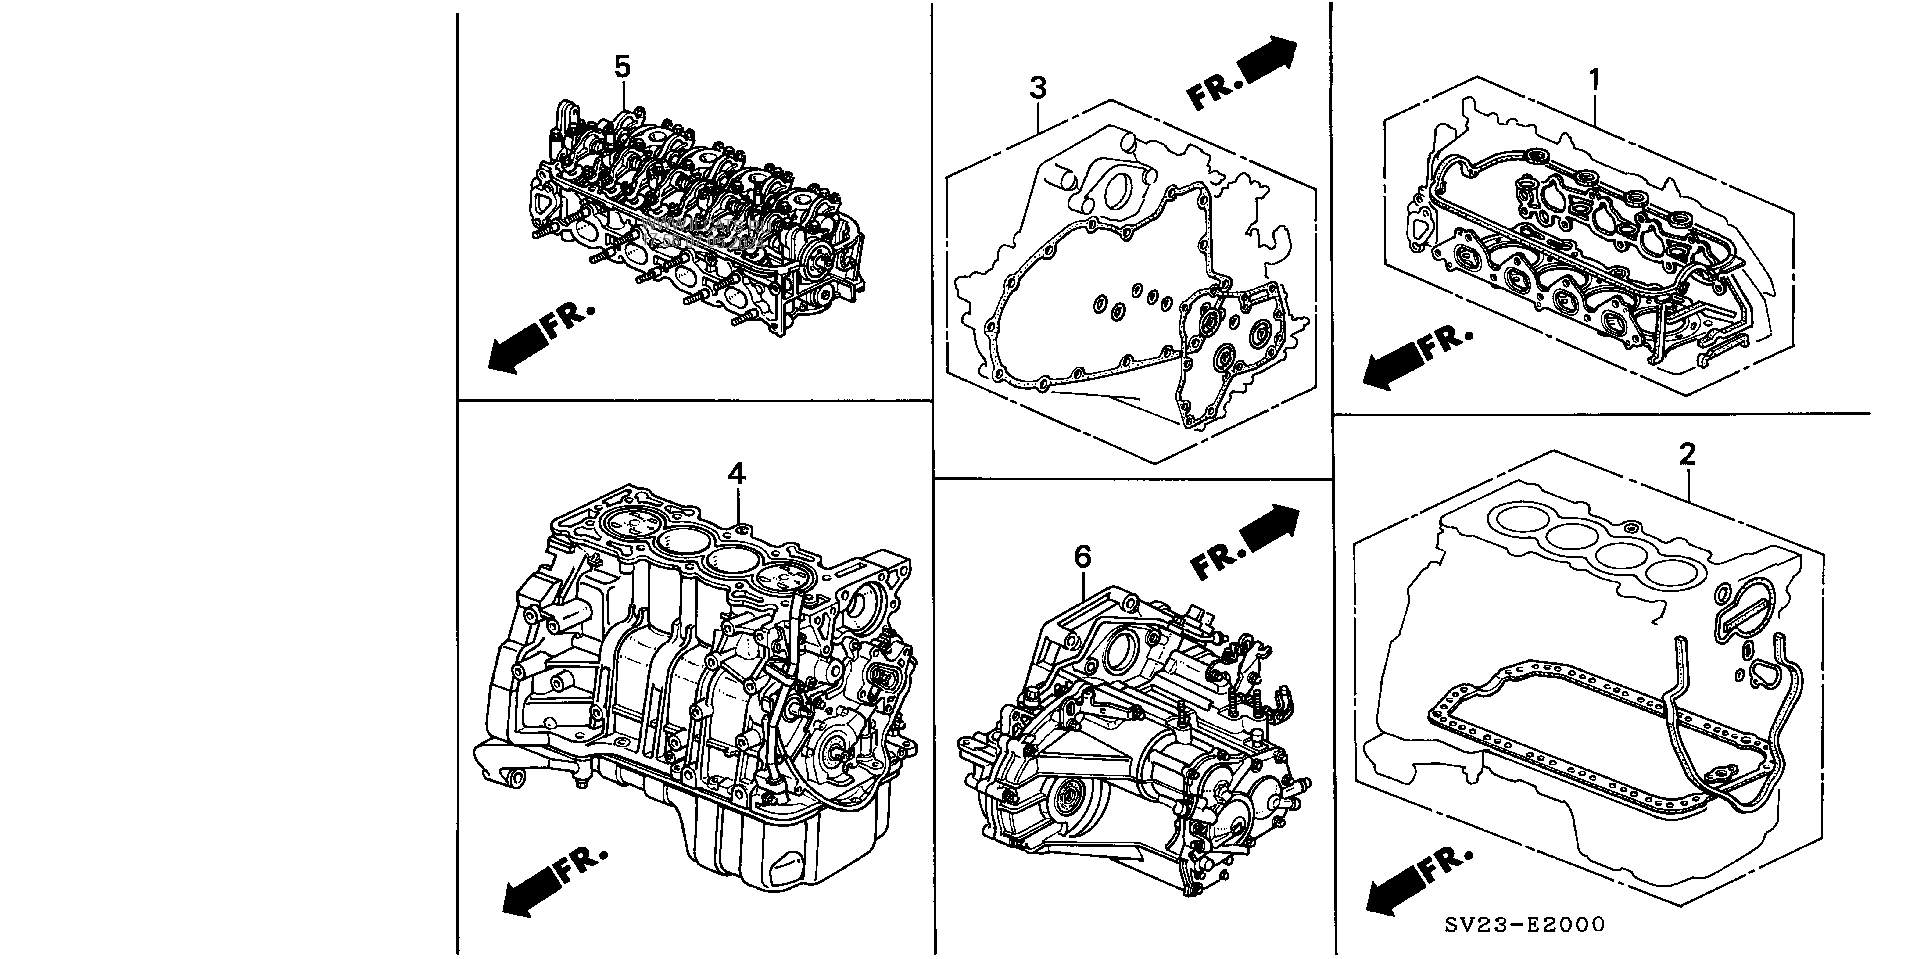 K24z3 manual transmission